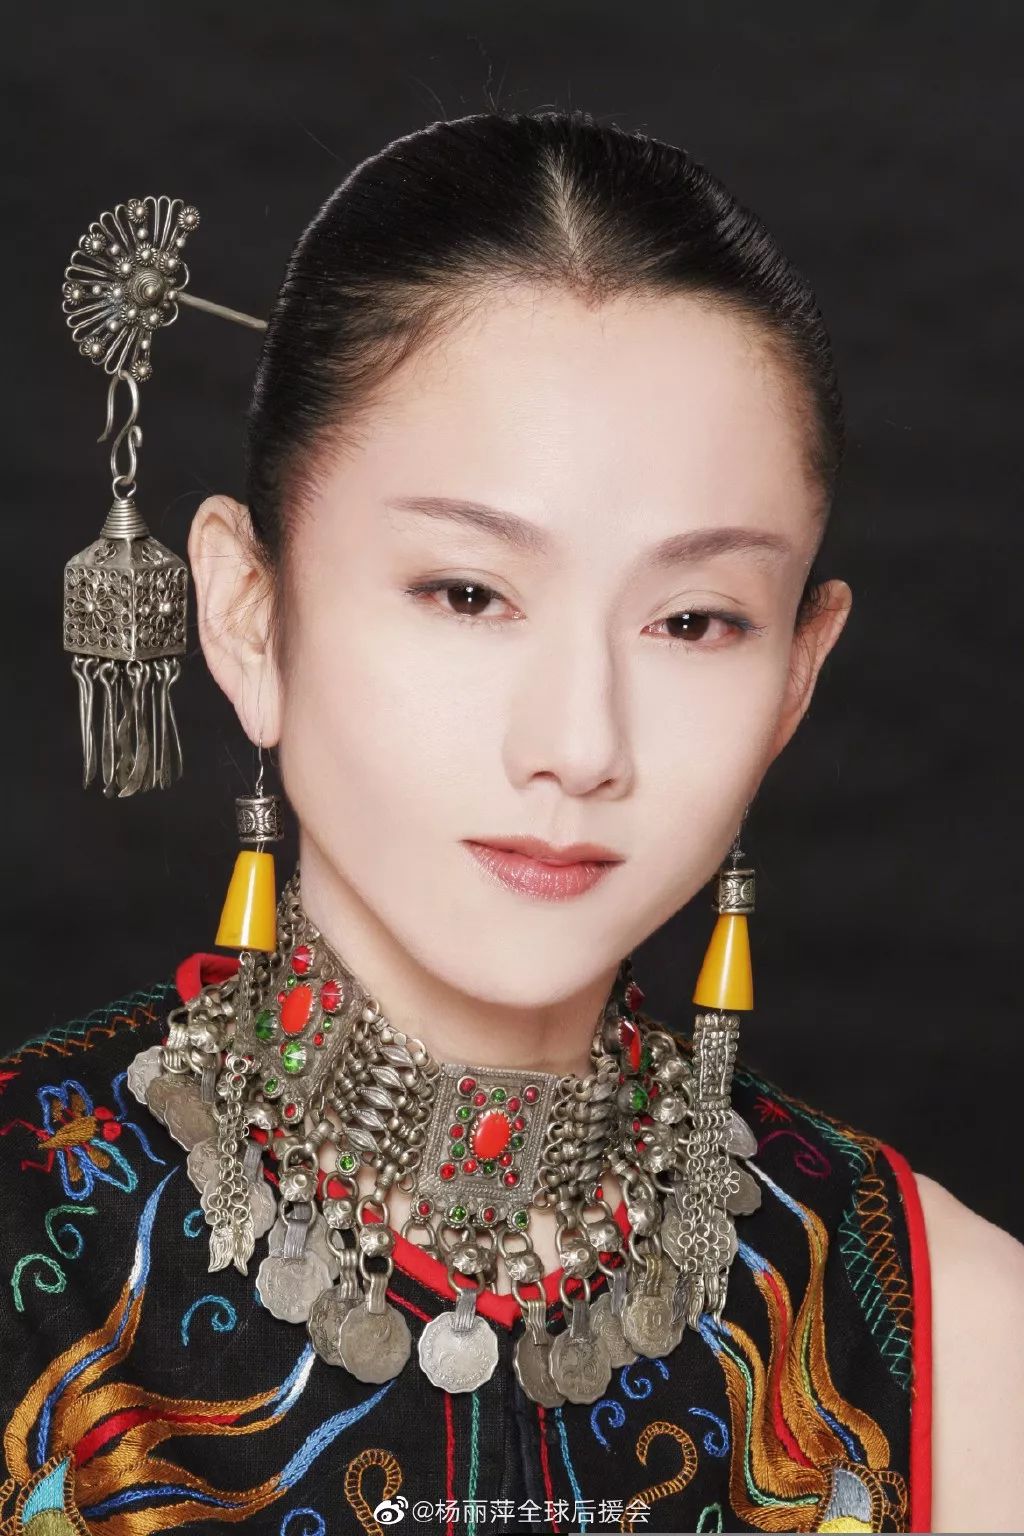 杨丽萍也许是当今国内唯一一个能把中国民族服饰穿得这么精彩的人